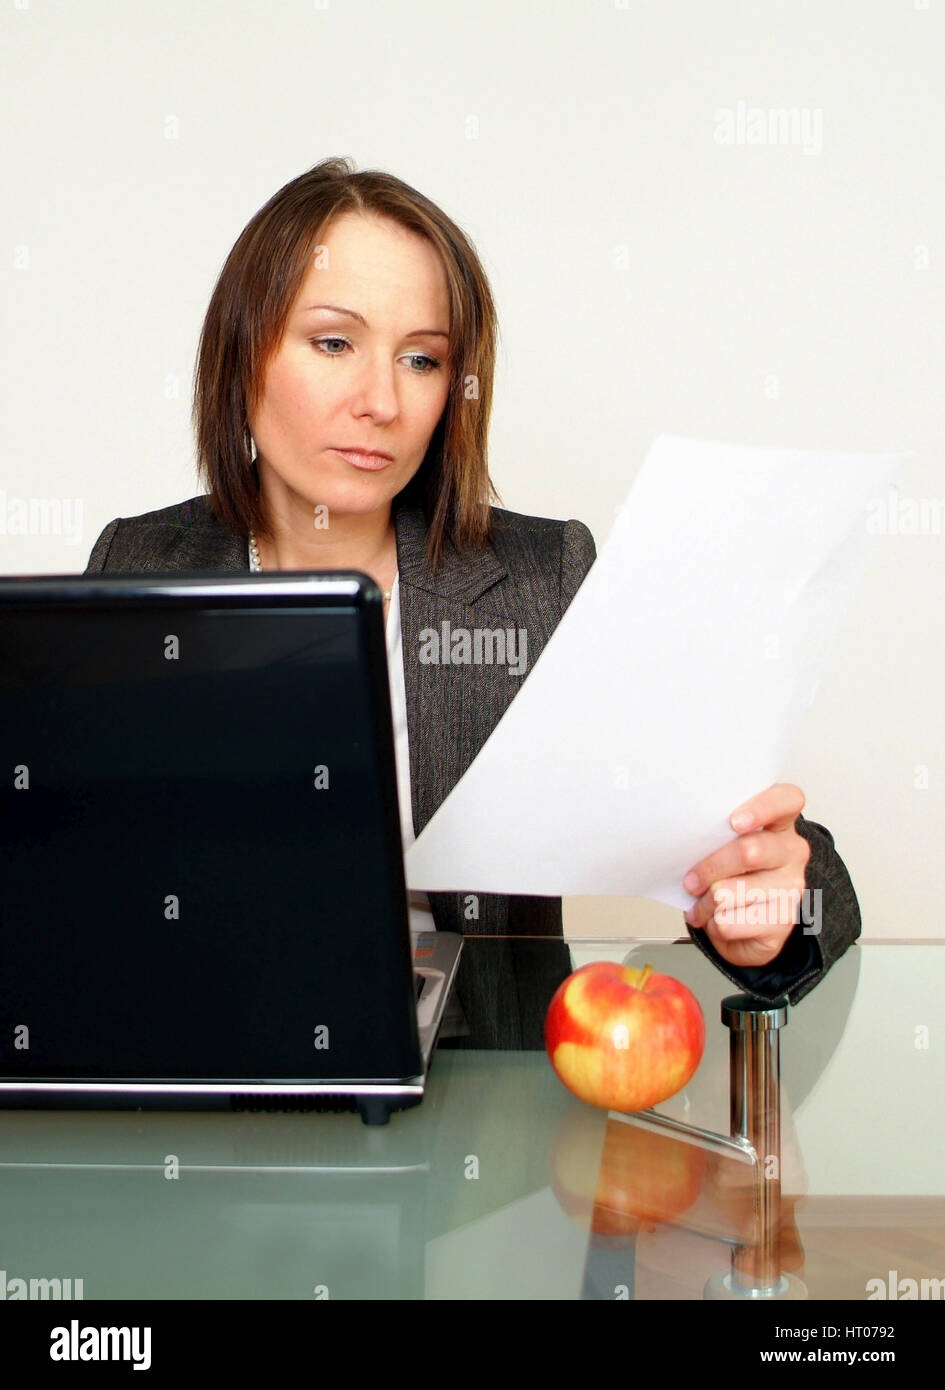 Geschaeftsfrau arbeitet am Notebook, daneben liegt ein Apfel - business woman using laptop, aside an apple Stock Photo